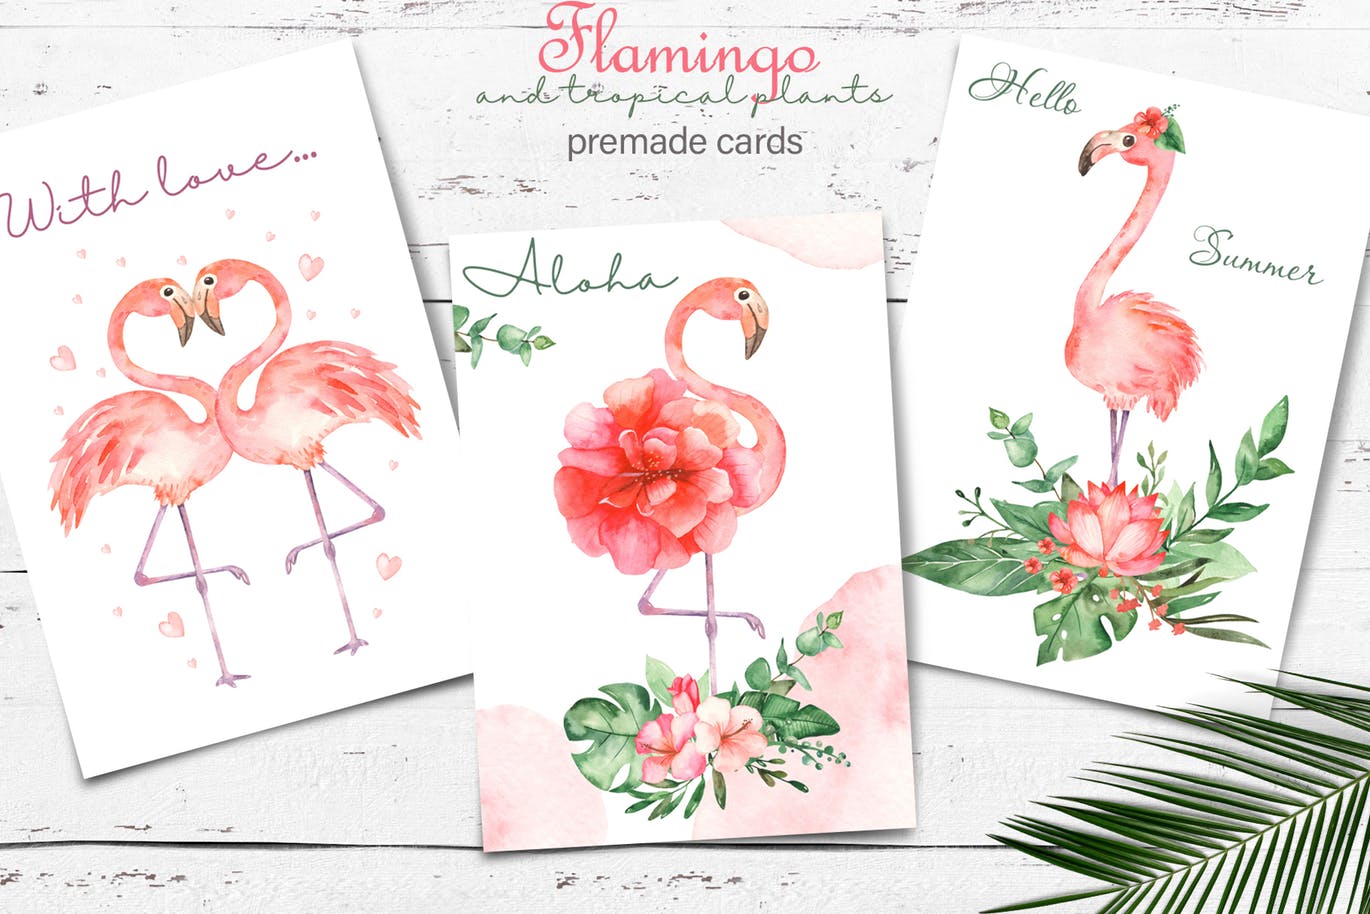 火烈鸟＆热带植物水彩插画素材 Watercolor flamingos and tropical plants插图10